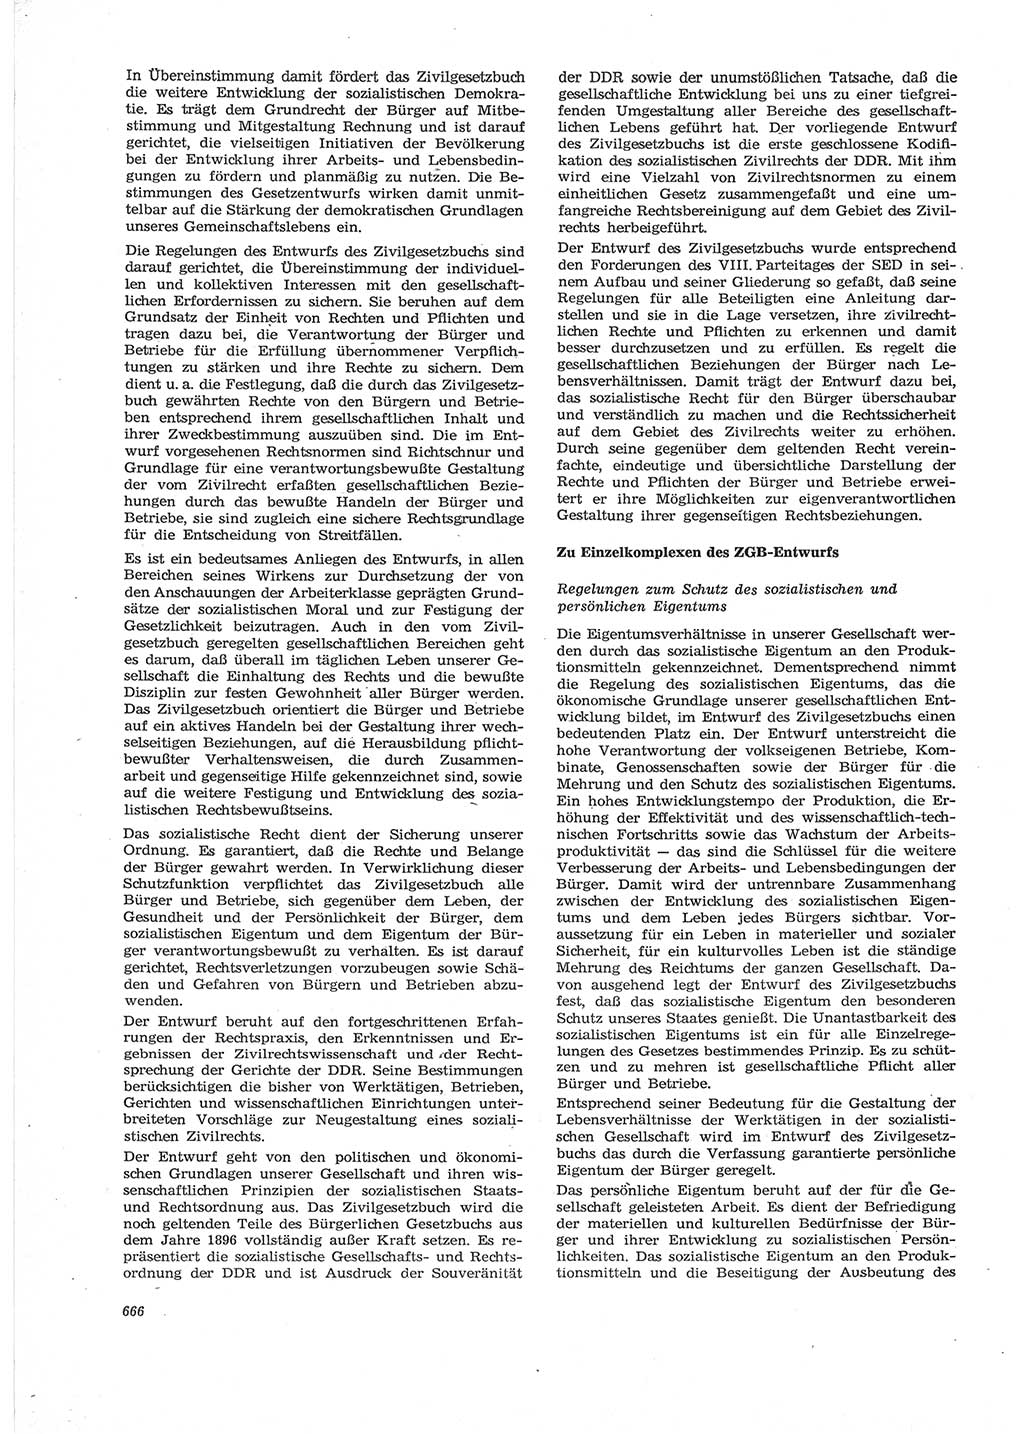 Neue Justiz (NJ), Zeitschrift für Recht und Rechtswissenschaft [Deutsche Demokratische Republik (DDR)], 28. Jahrgang 1974, Seite 666 (NJ DDR 1974, S. 666)